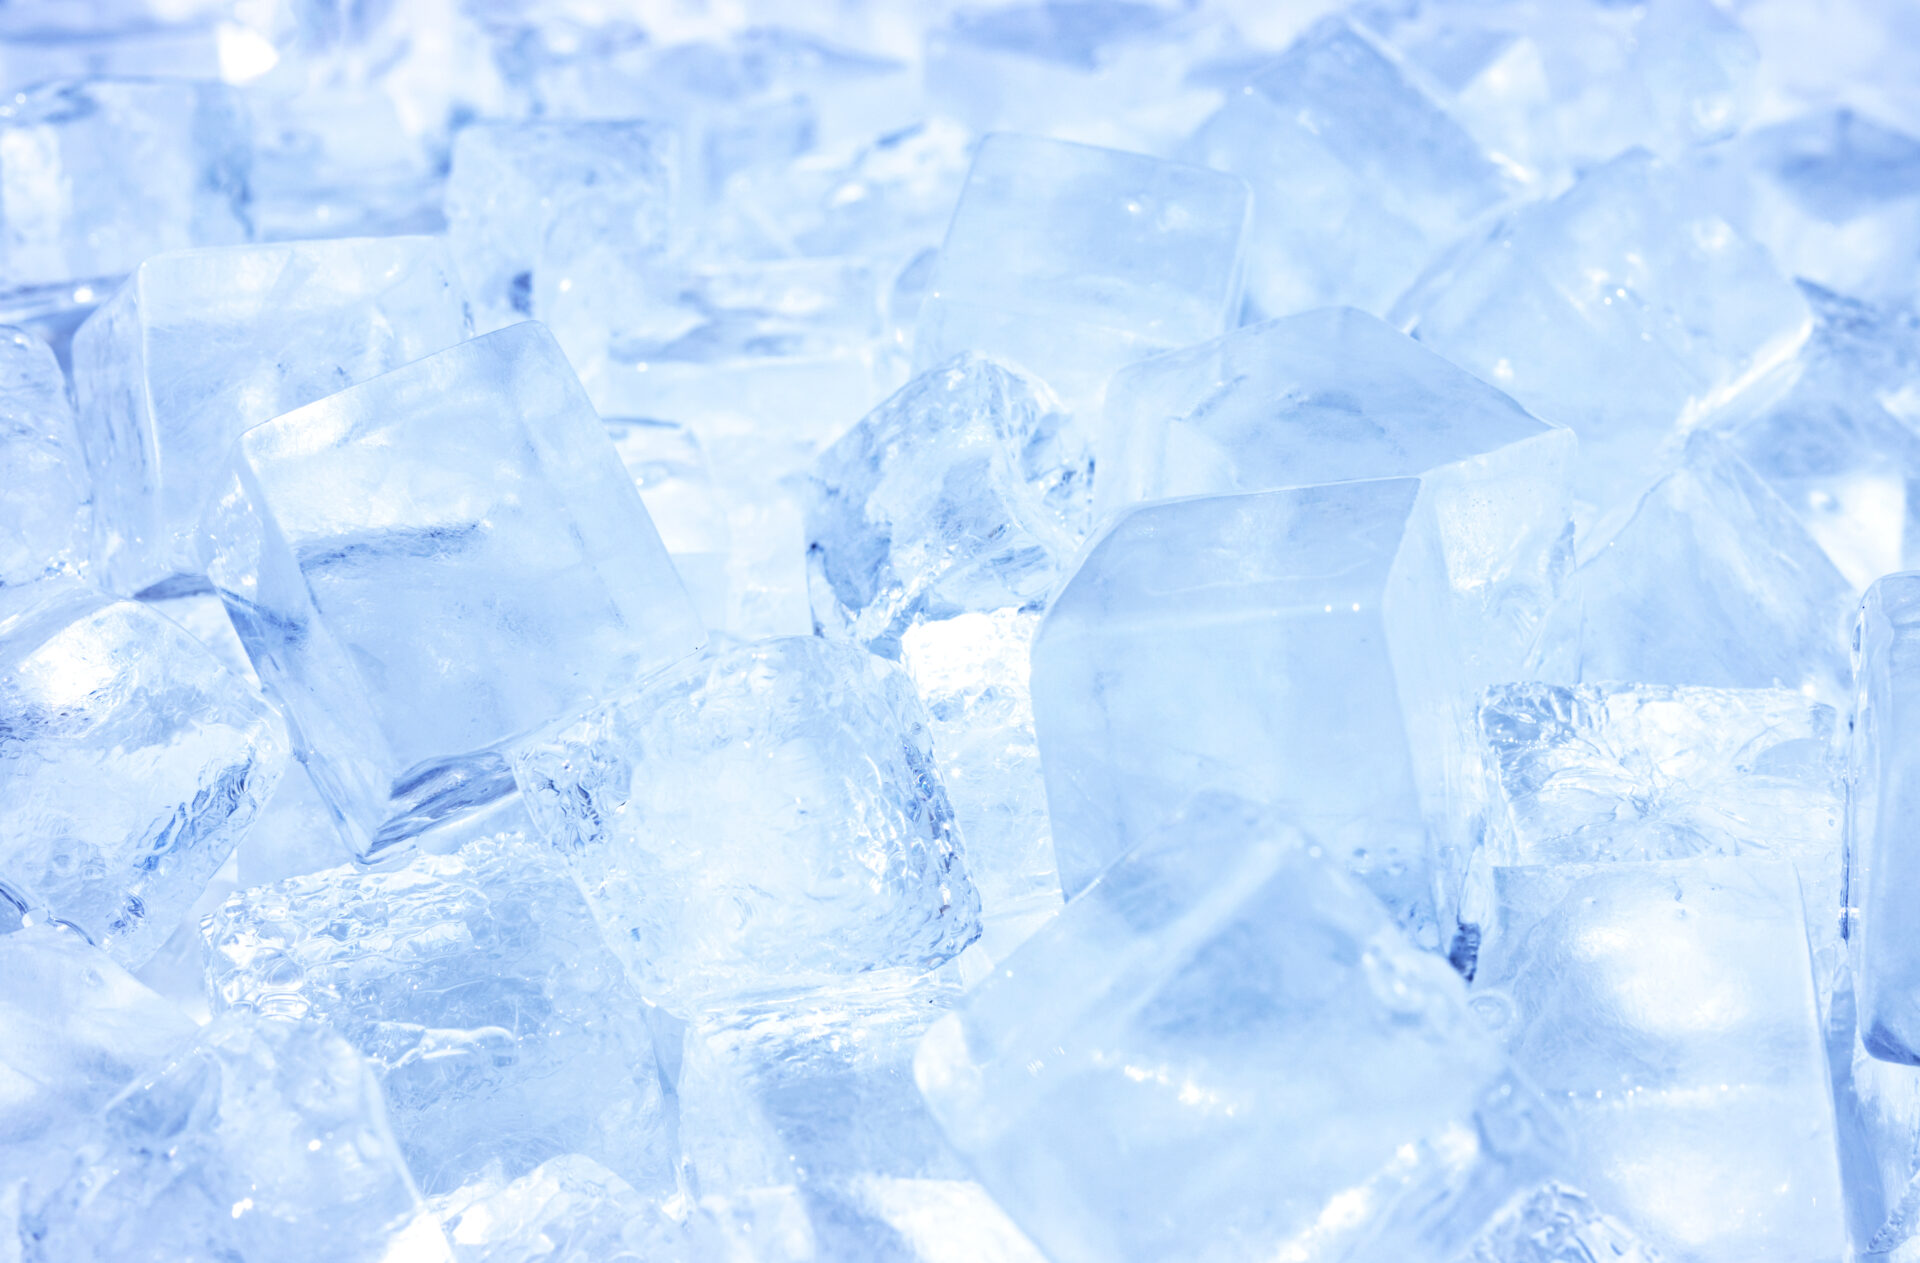 きれいな氷の作り方とは ミネラルウォーターでフラワーアイスキューブを作ろう 水と健康の情報メディア トリム ミズラボ 日本トリム